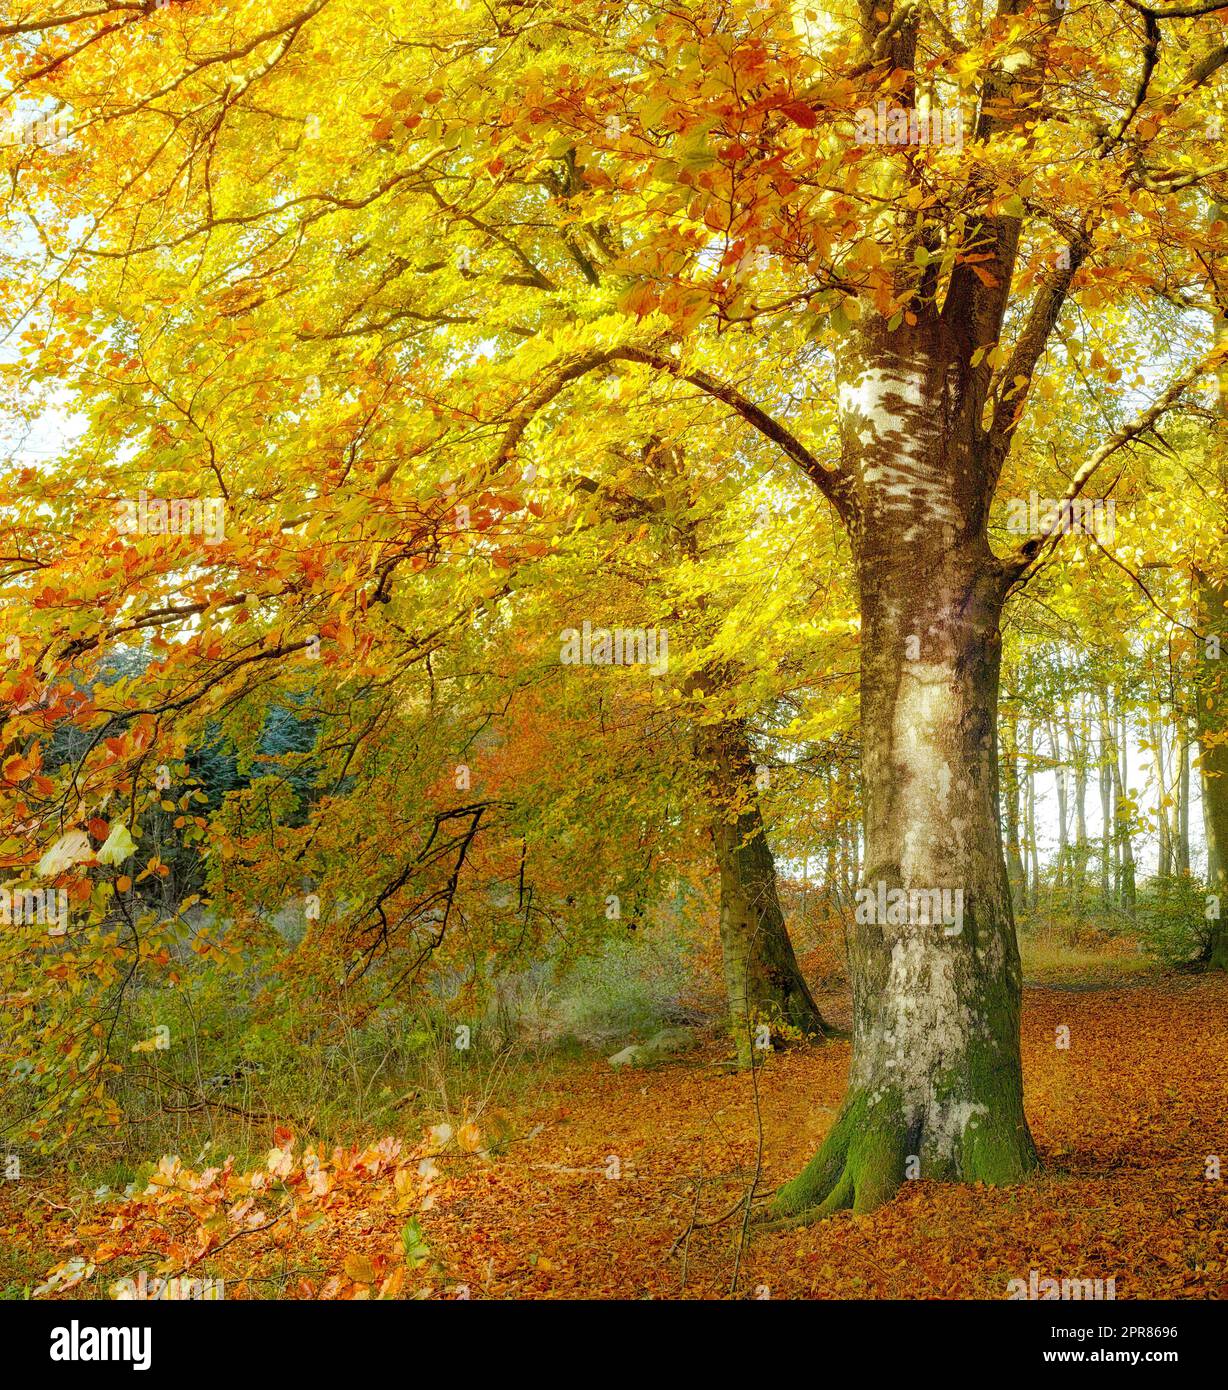 Une forêt d'automne en plein soleil. De grands arbres avec des feuilles d'orange et de jaune brun doré dans un parc ou une forêt brousse avec. Paysage d'une campagne paisible et sereine pendant la journée Banque D'Images